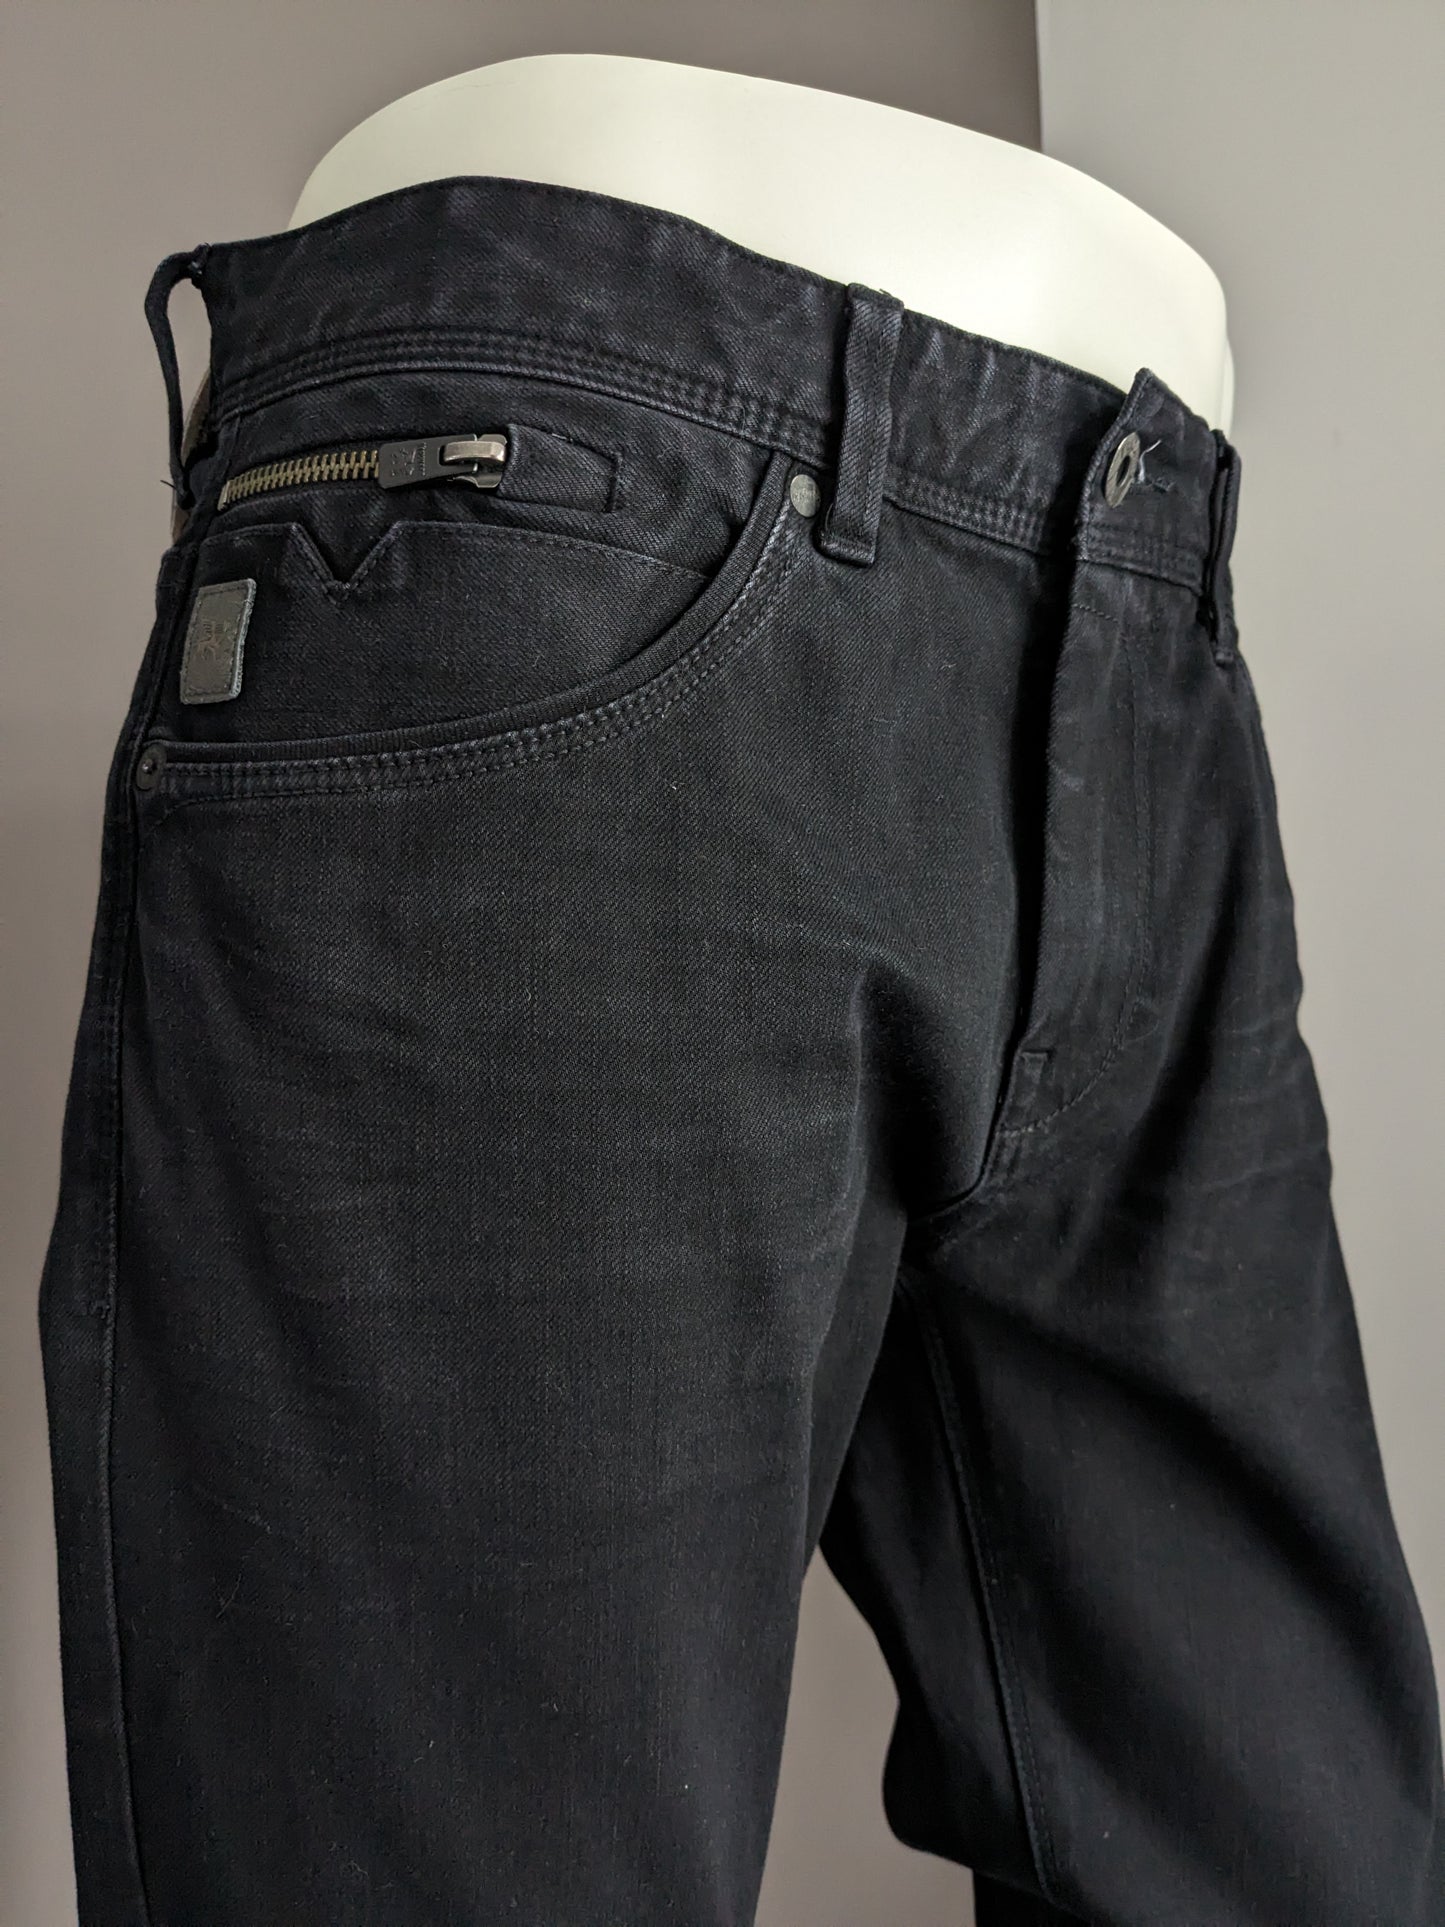 Jeans Vanguard. Couleur noire. Taille W34 - L36. extensible. Tapez "V850 Rider". Slim Fit.